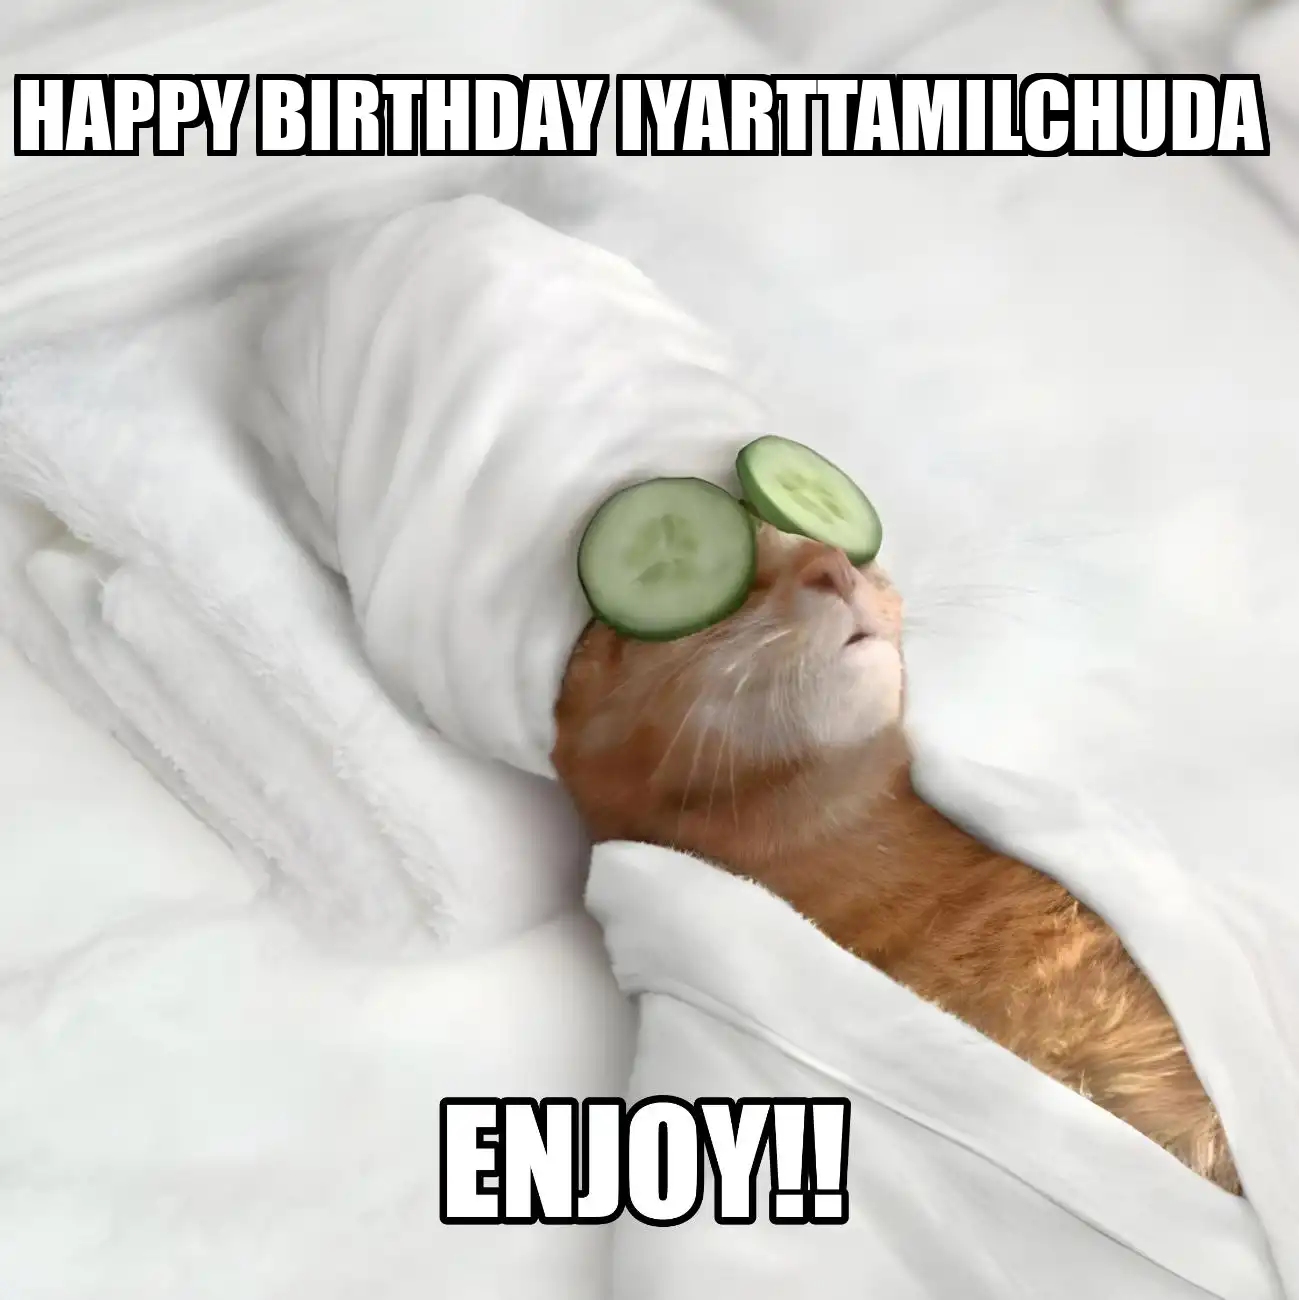 Happy Birthday Iyarttamilchuda Enjoy Cat Meme